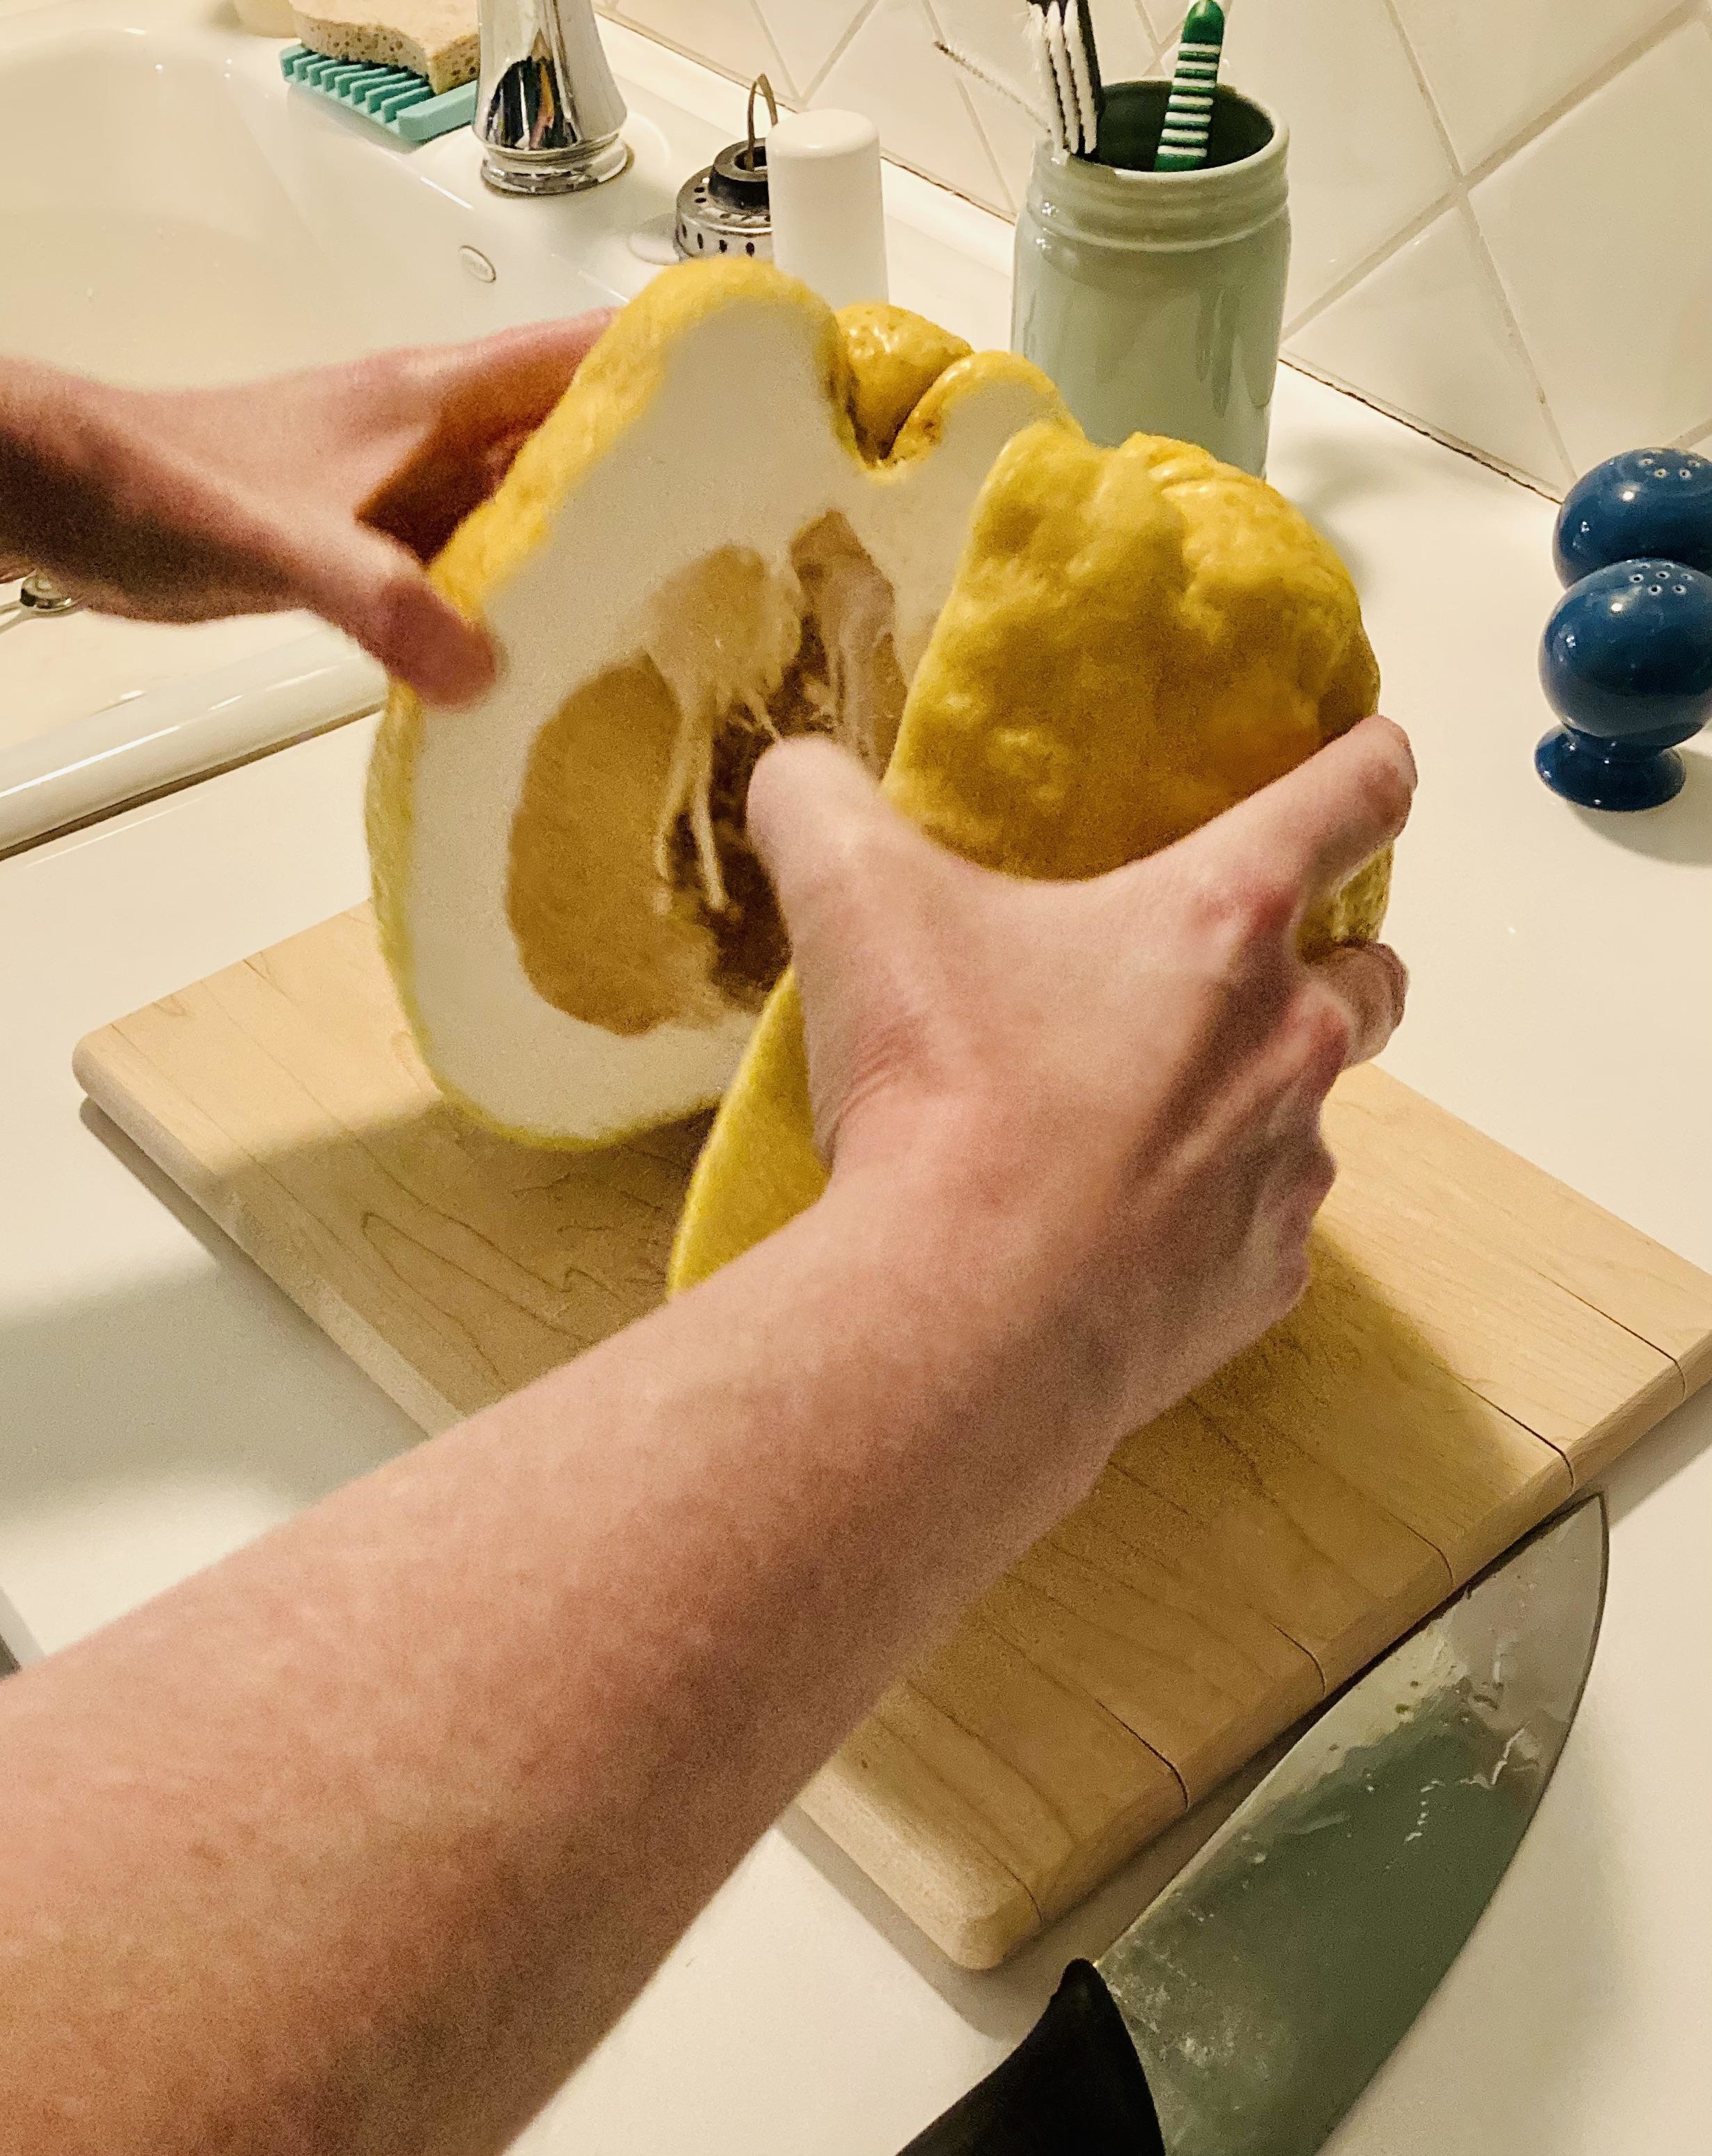 a giant lemon